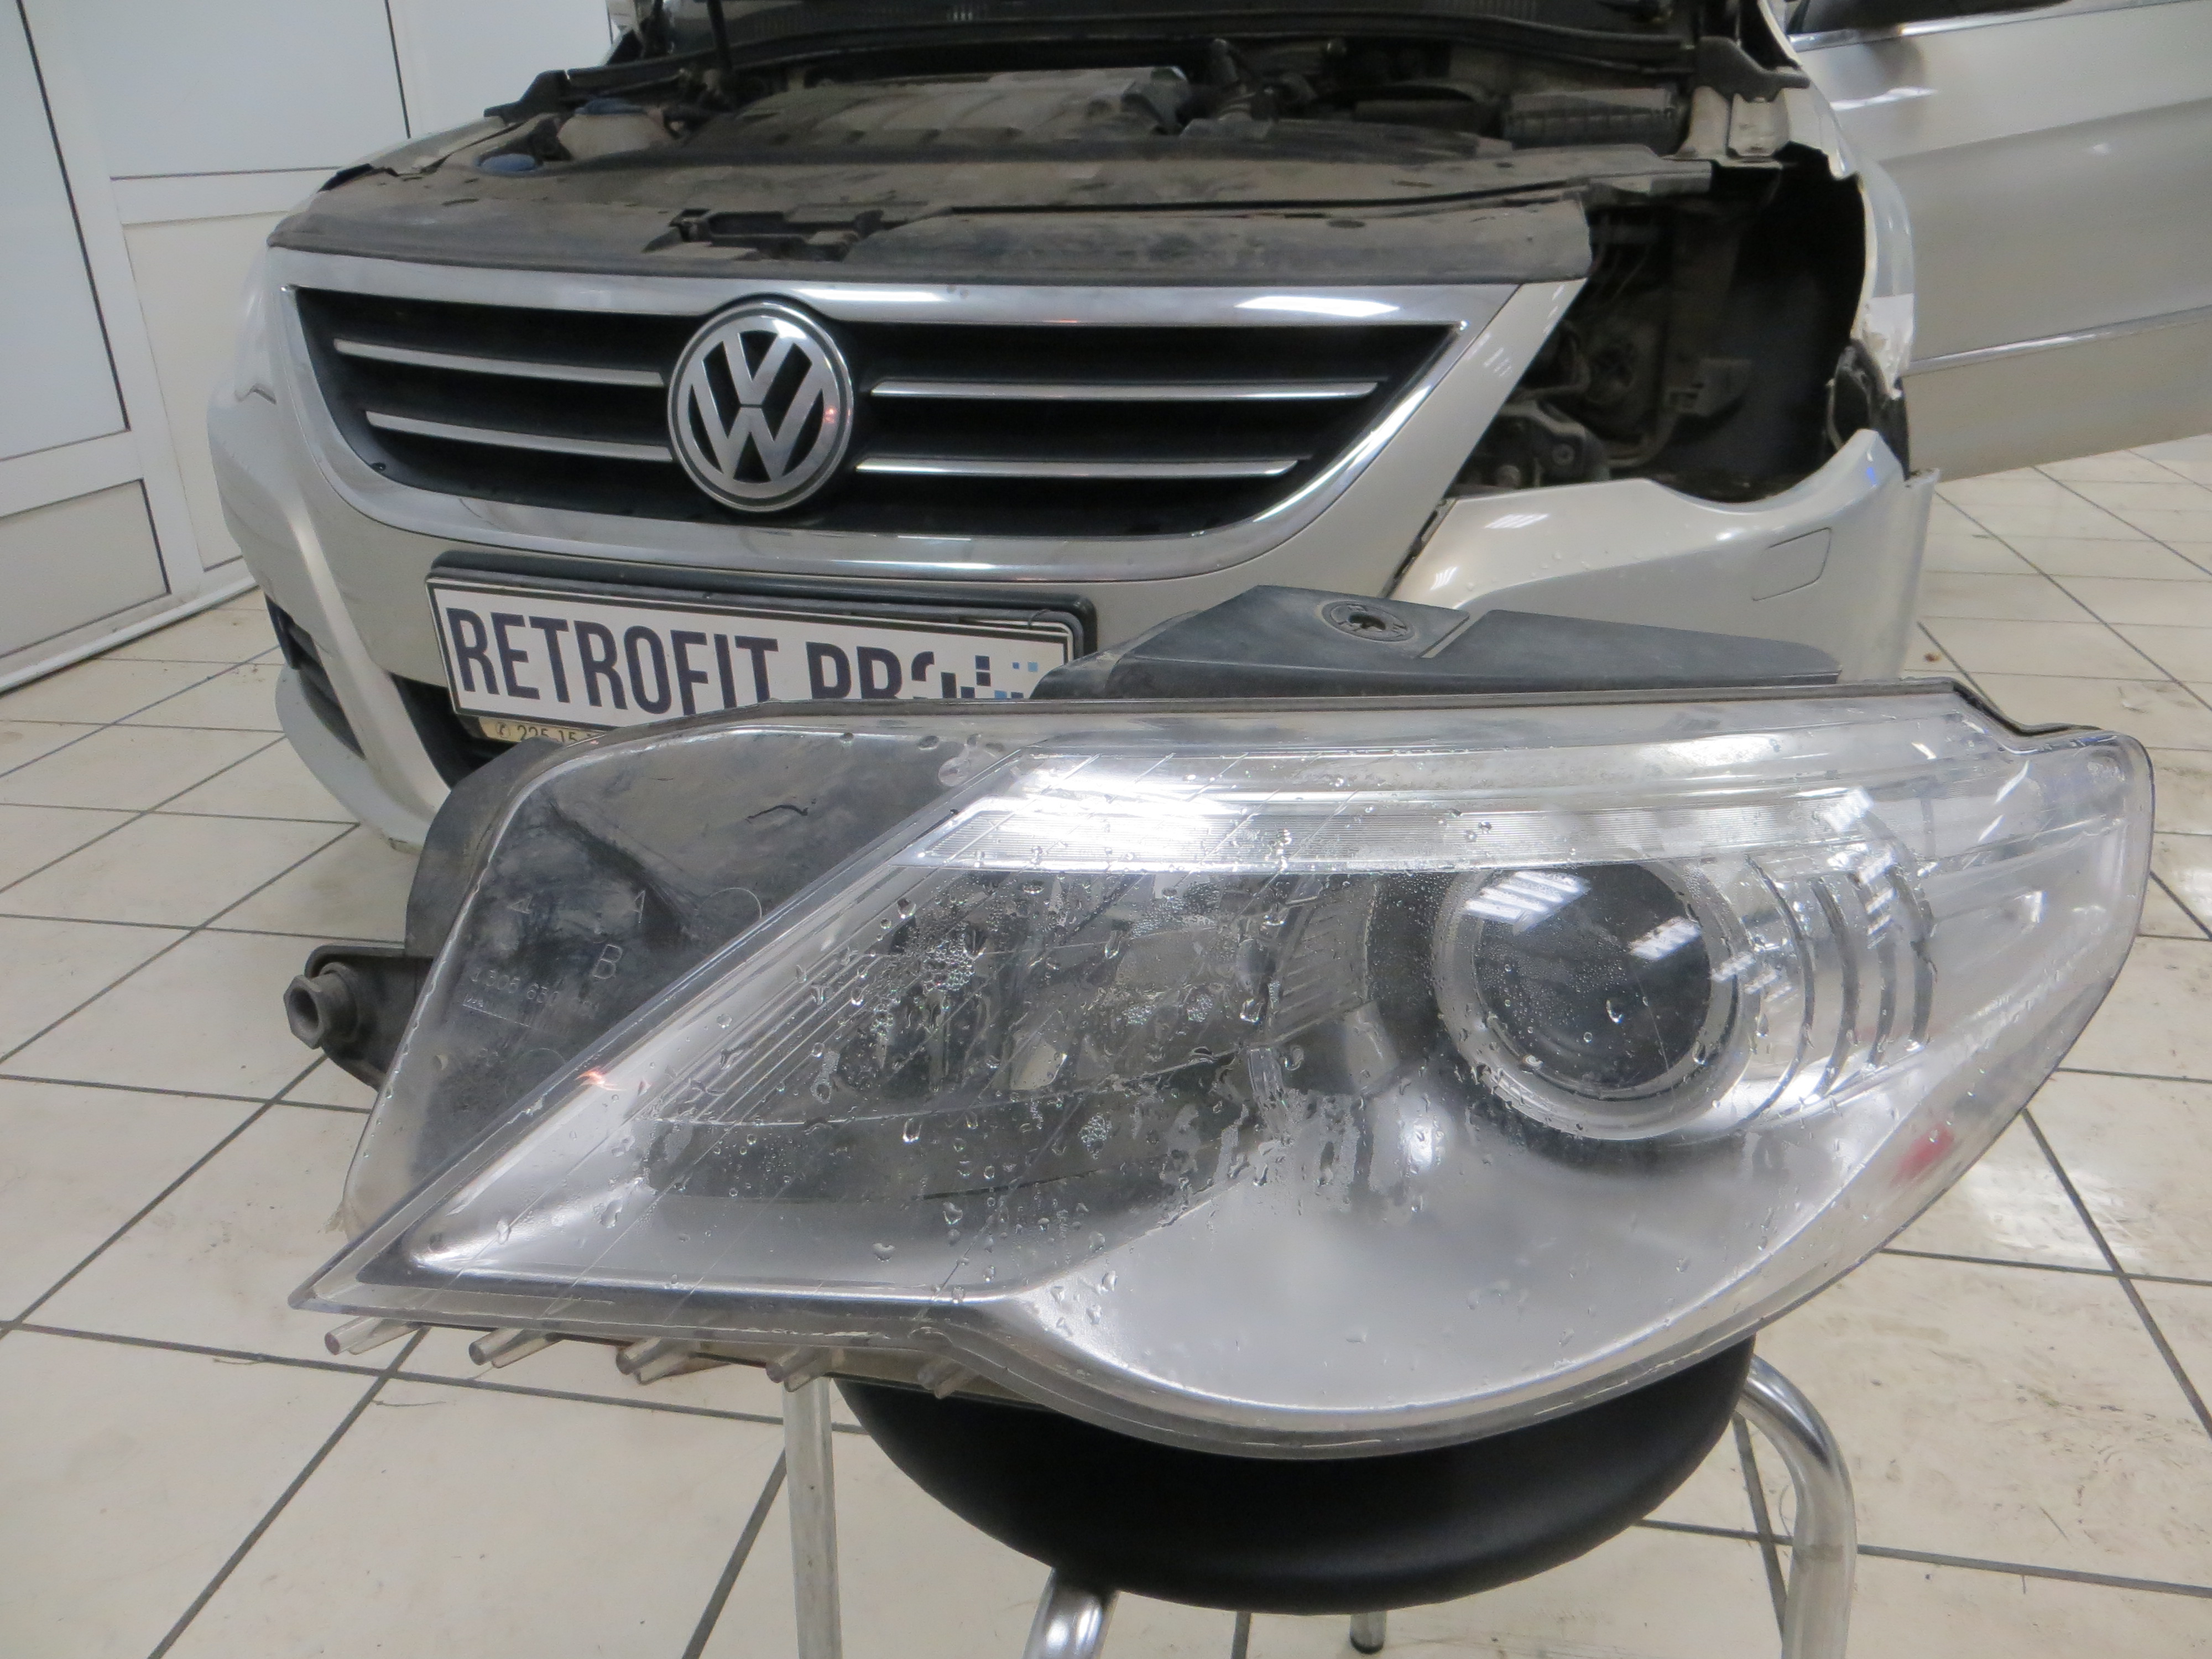 Volkswagen Passat CC I (2008-2012) - Устранение запотевания + Ремонт корпуса фары